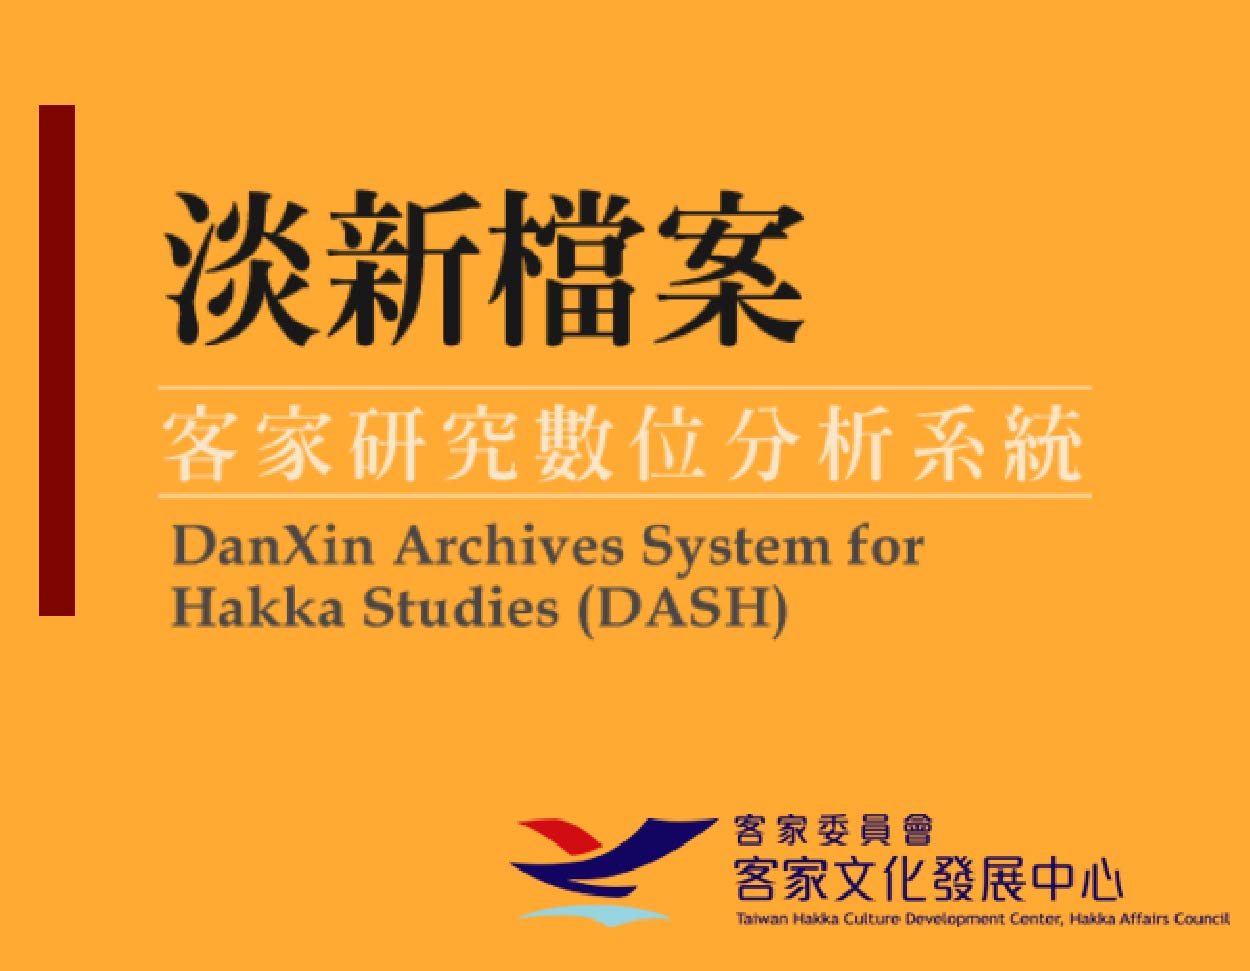 DanXin Archives System for Hakka Studies